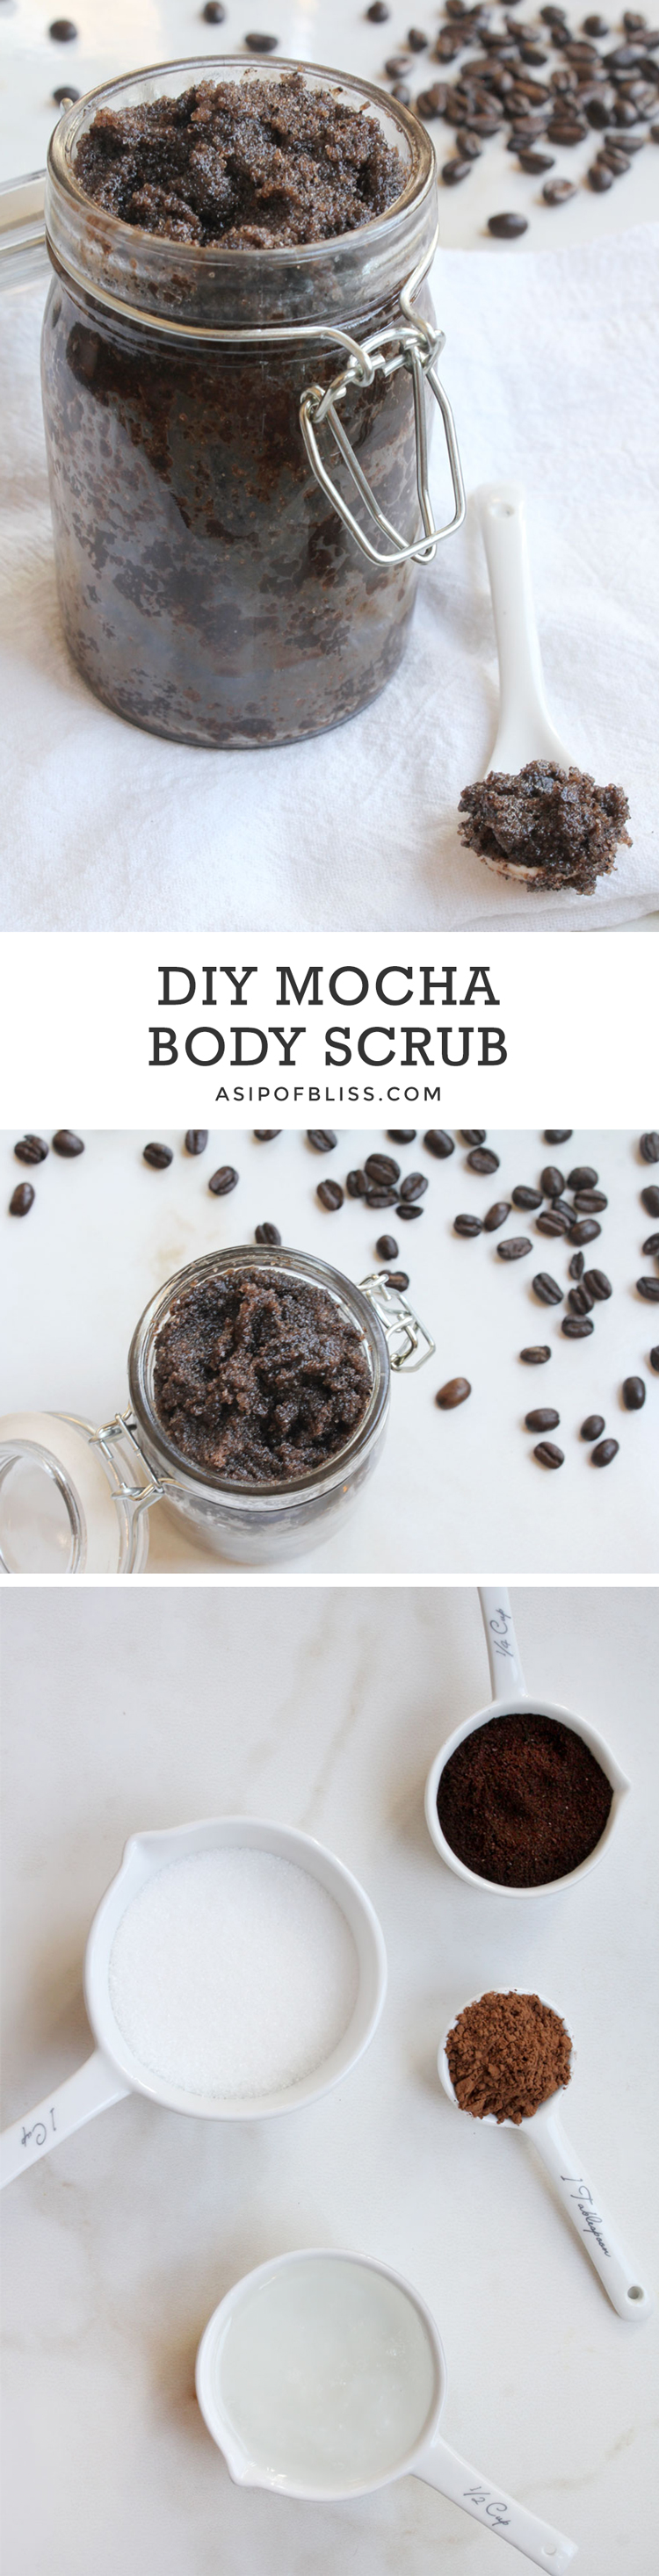 DIY Mocha Body Scrub | A Sip of Bliss